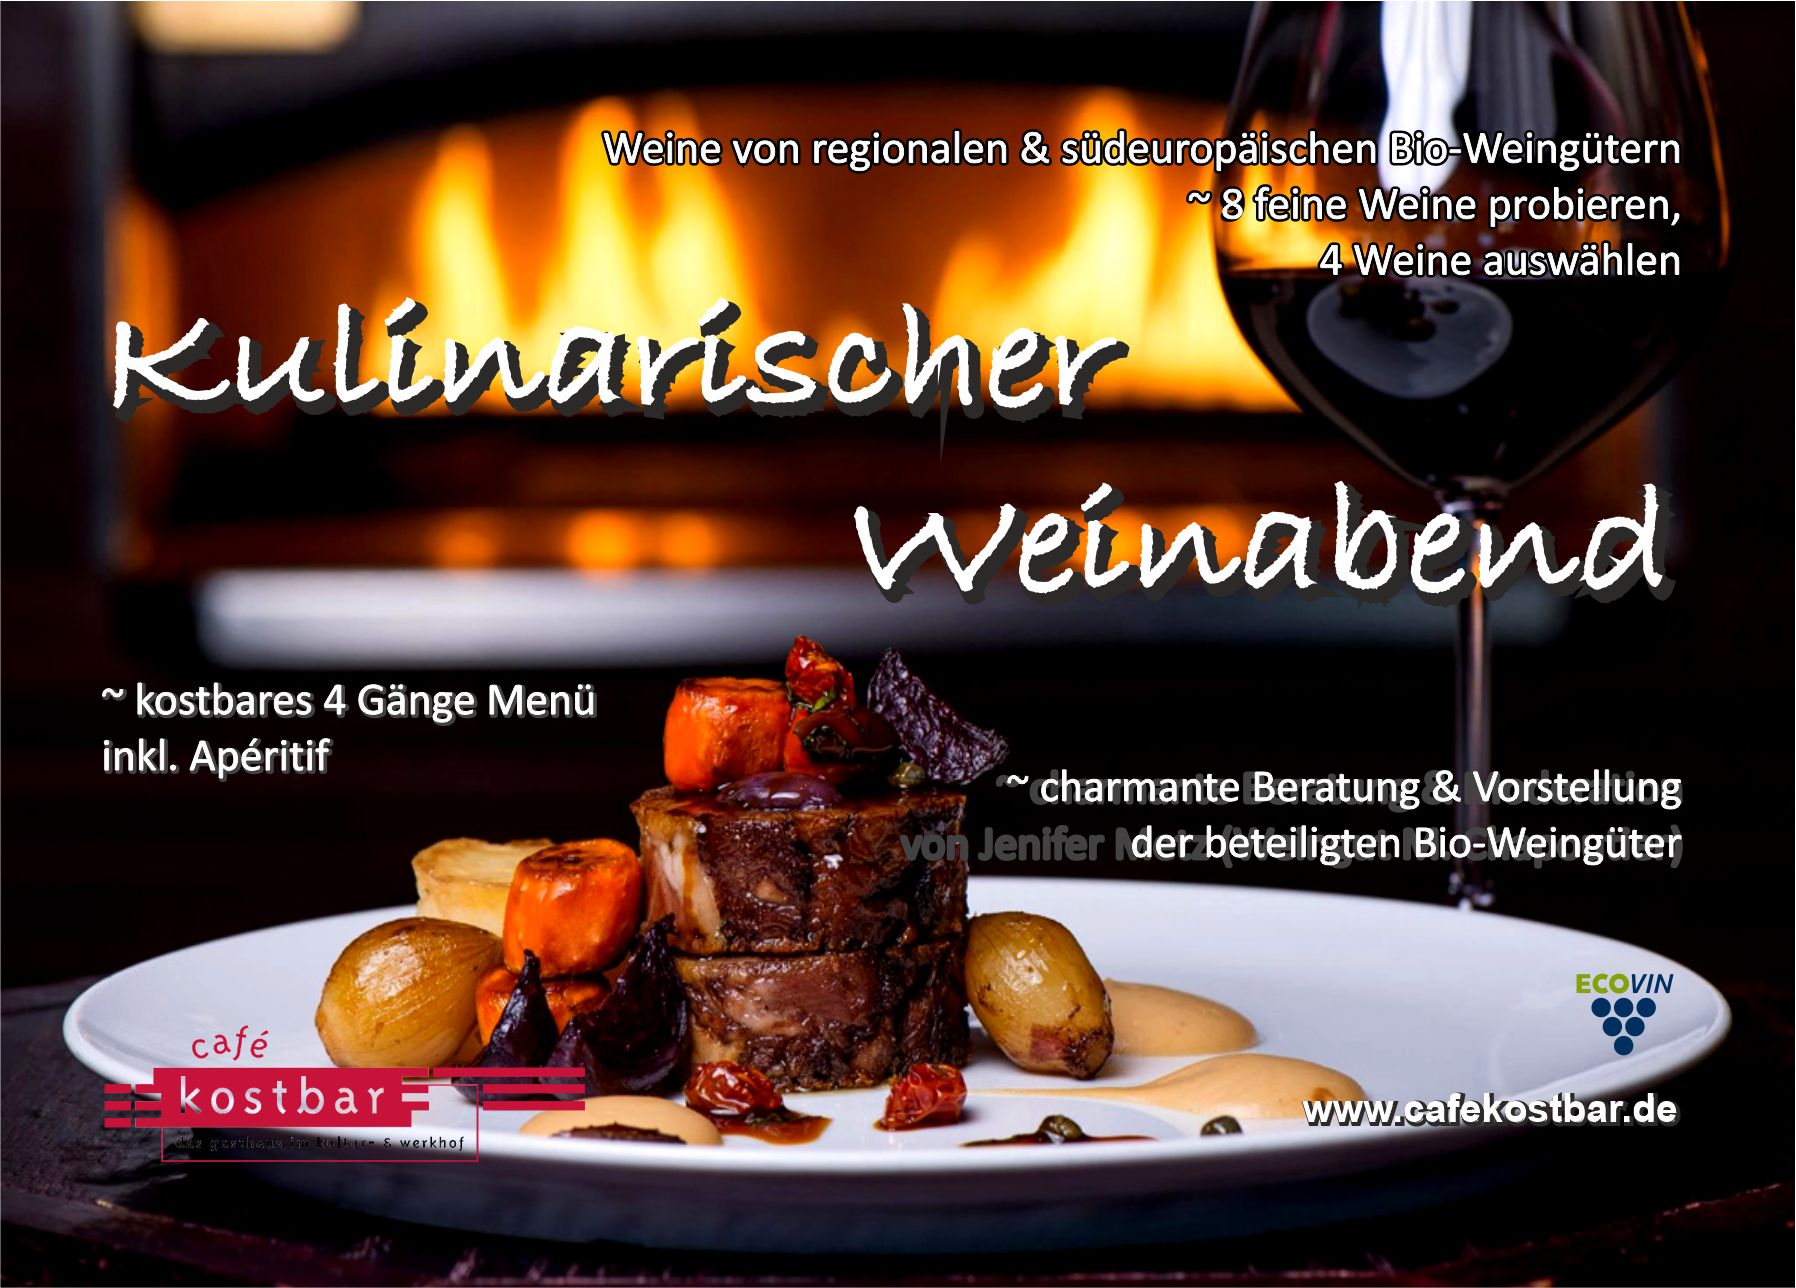 Weinabend auf kulinarisch mit regionalen & südeuropäischen Bio-Winzern zu kostbarem 4 Gänge Menü